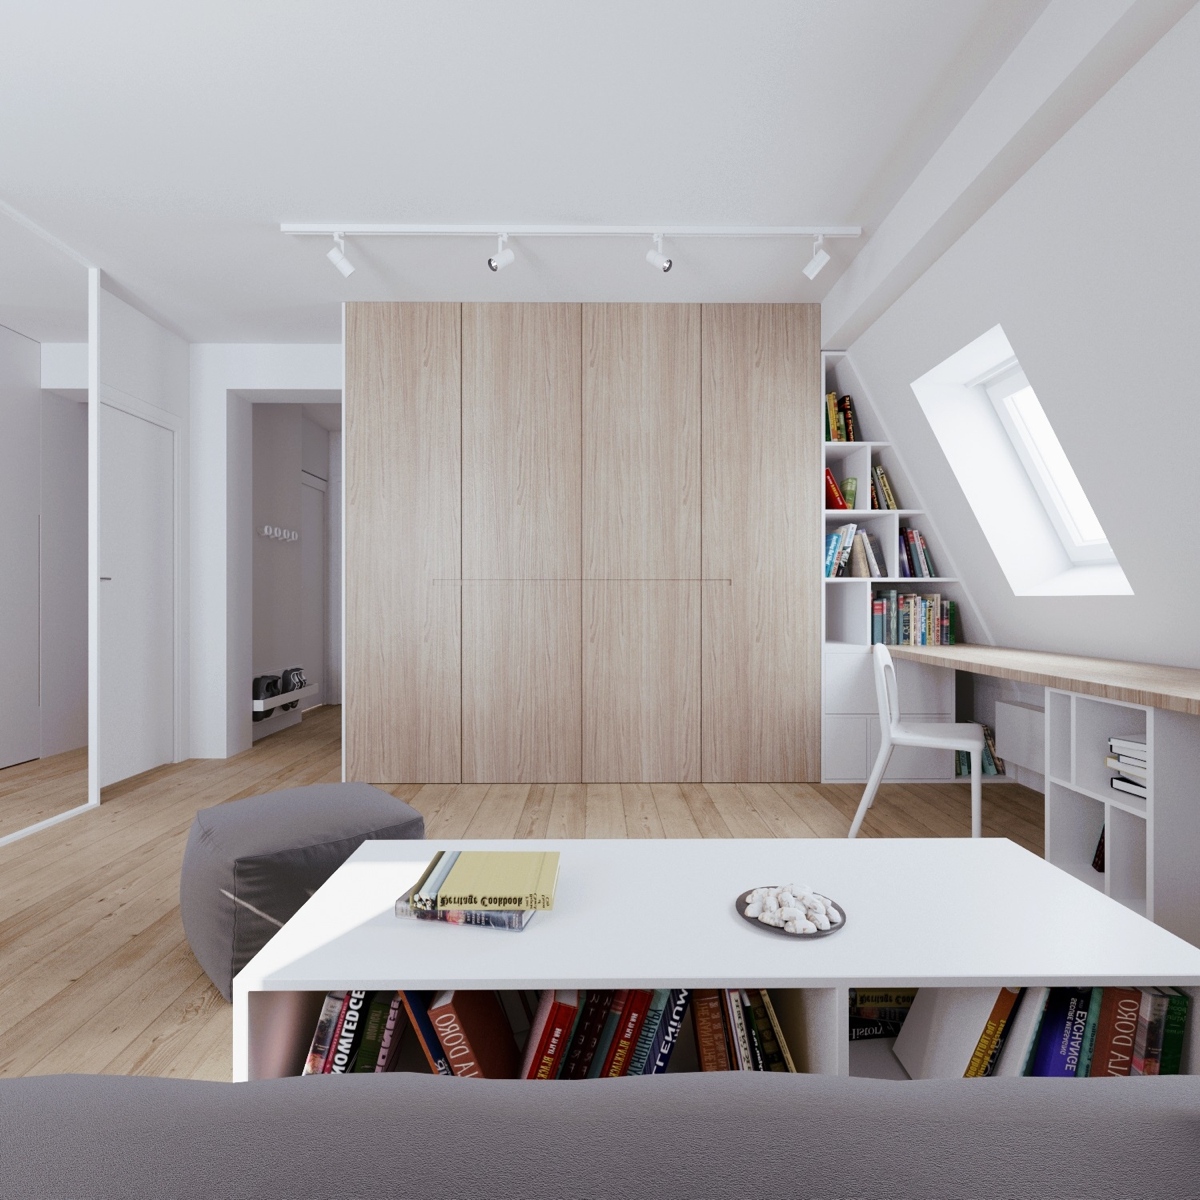 Minimalist living room design ideas